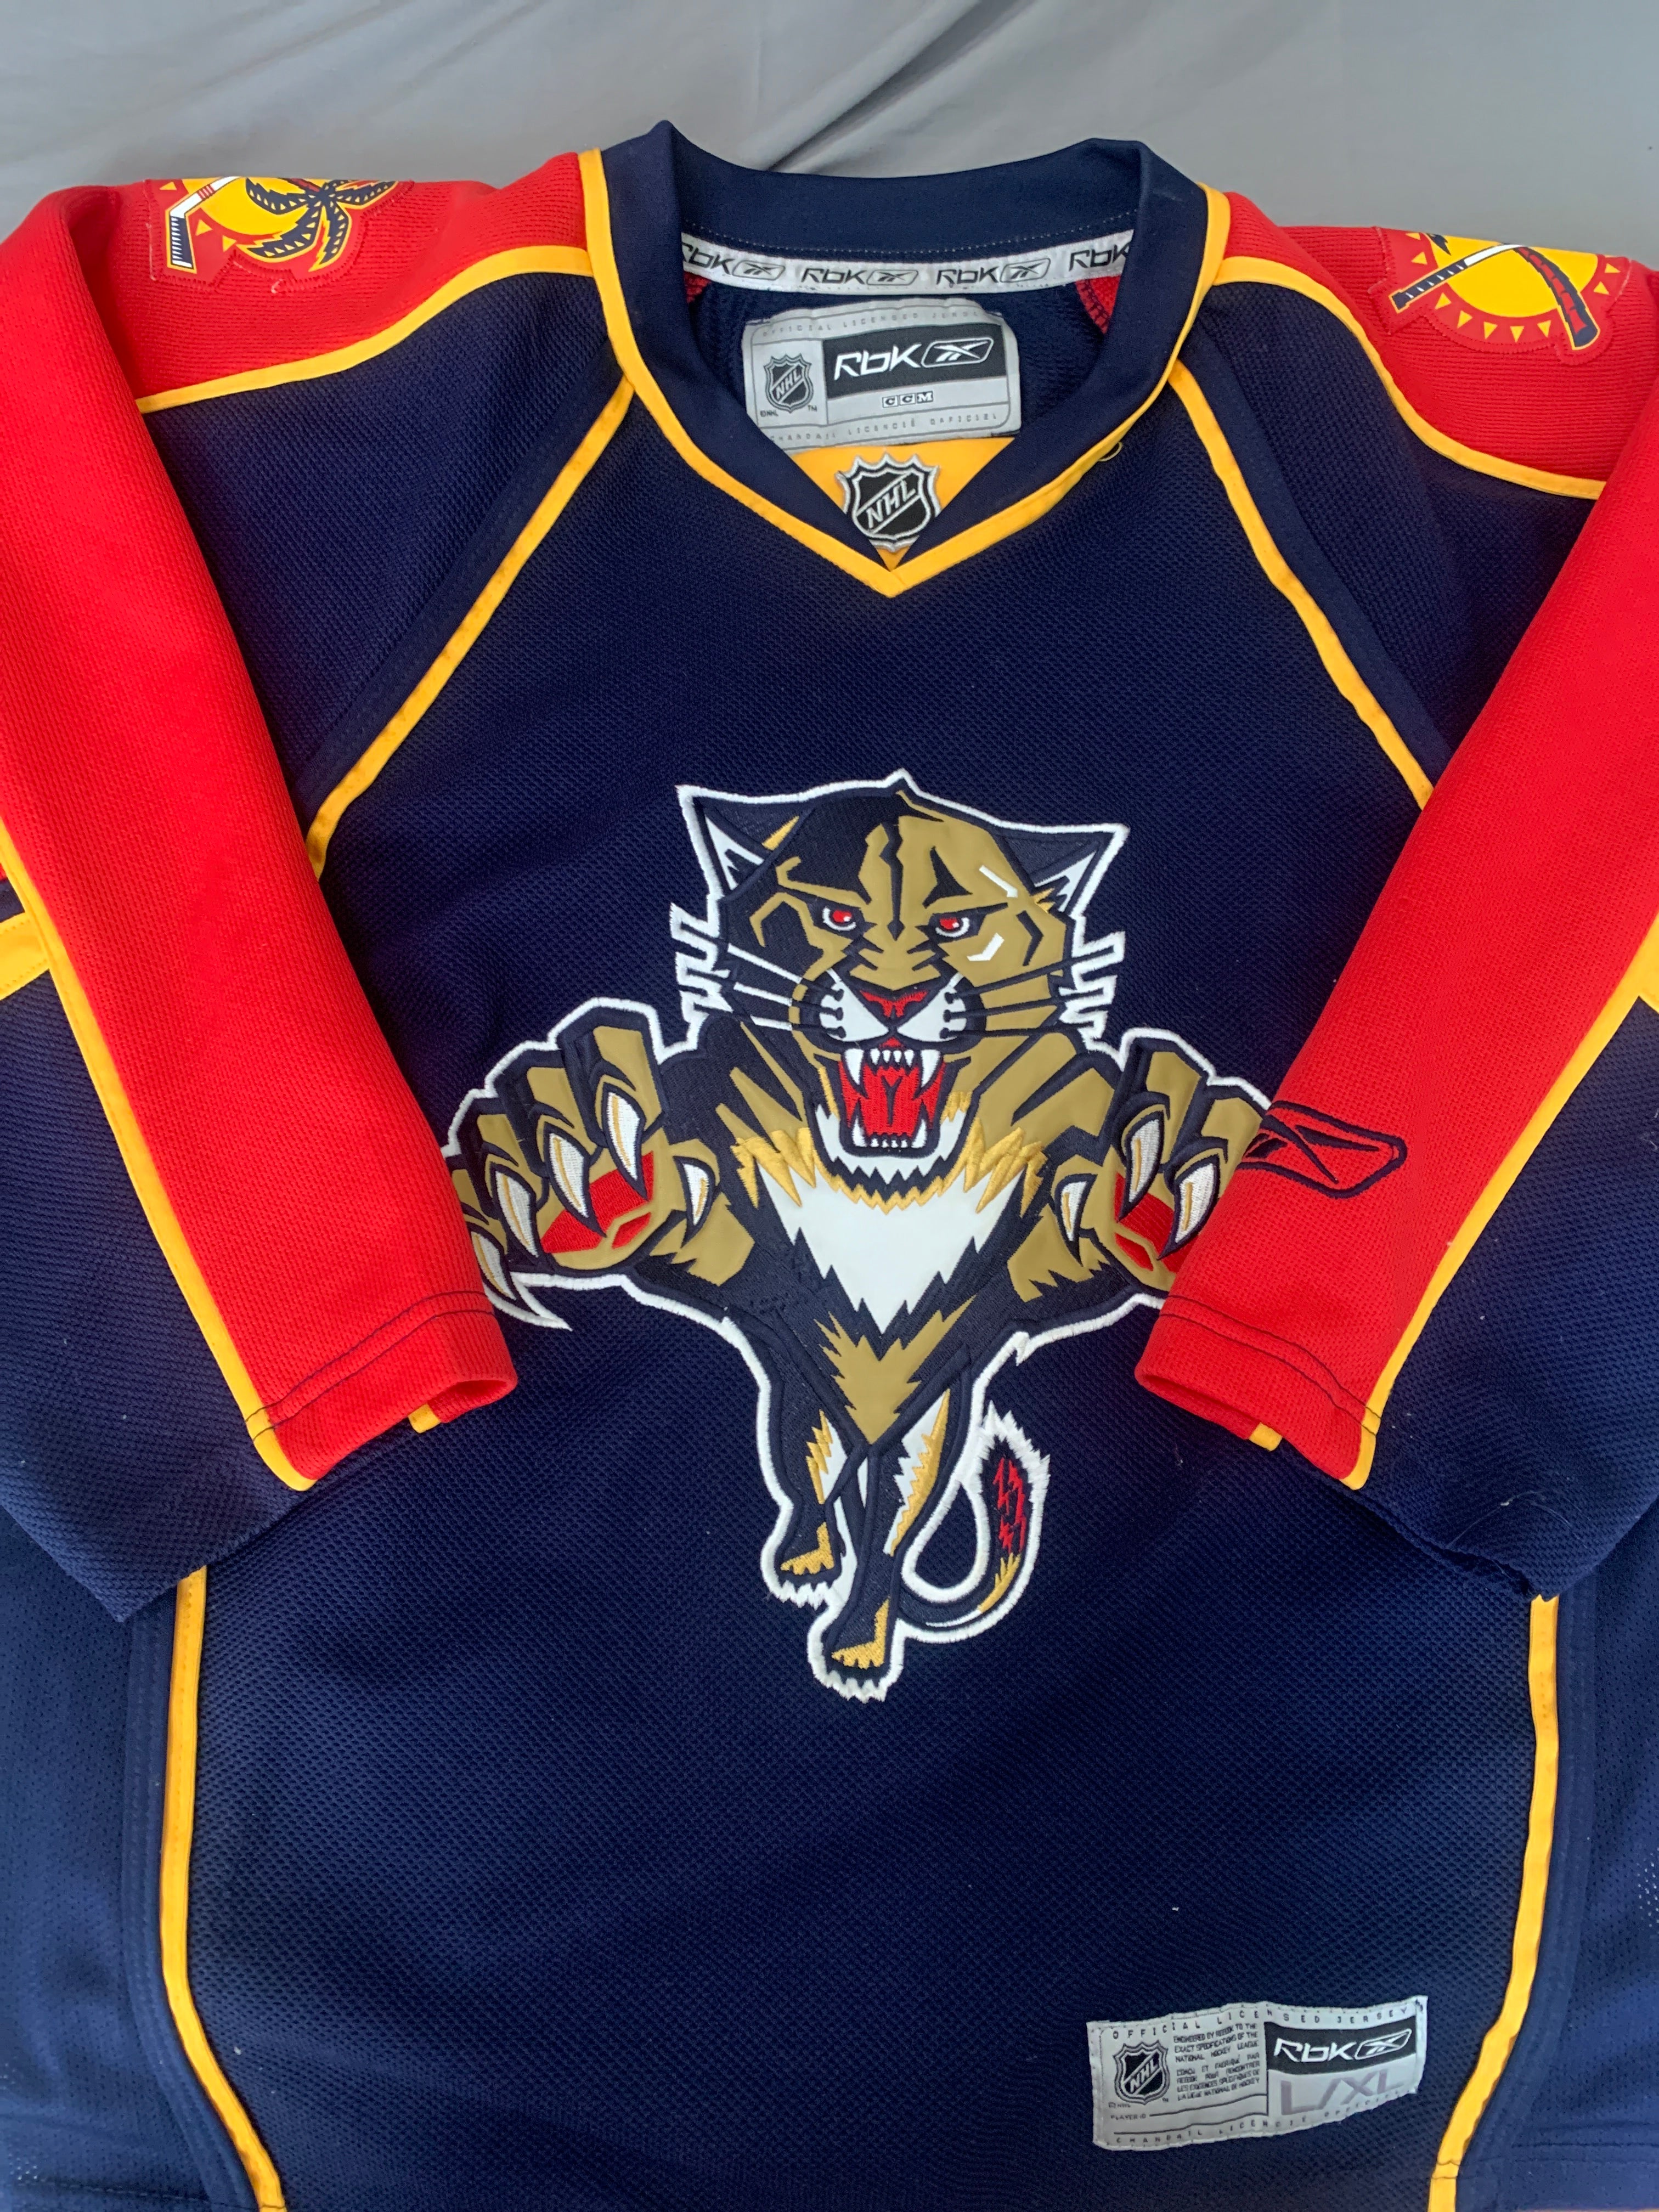 Reebok, Shirts, Florida Panthers Reebok Old Logo Jersey